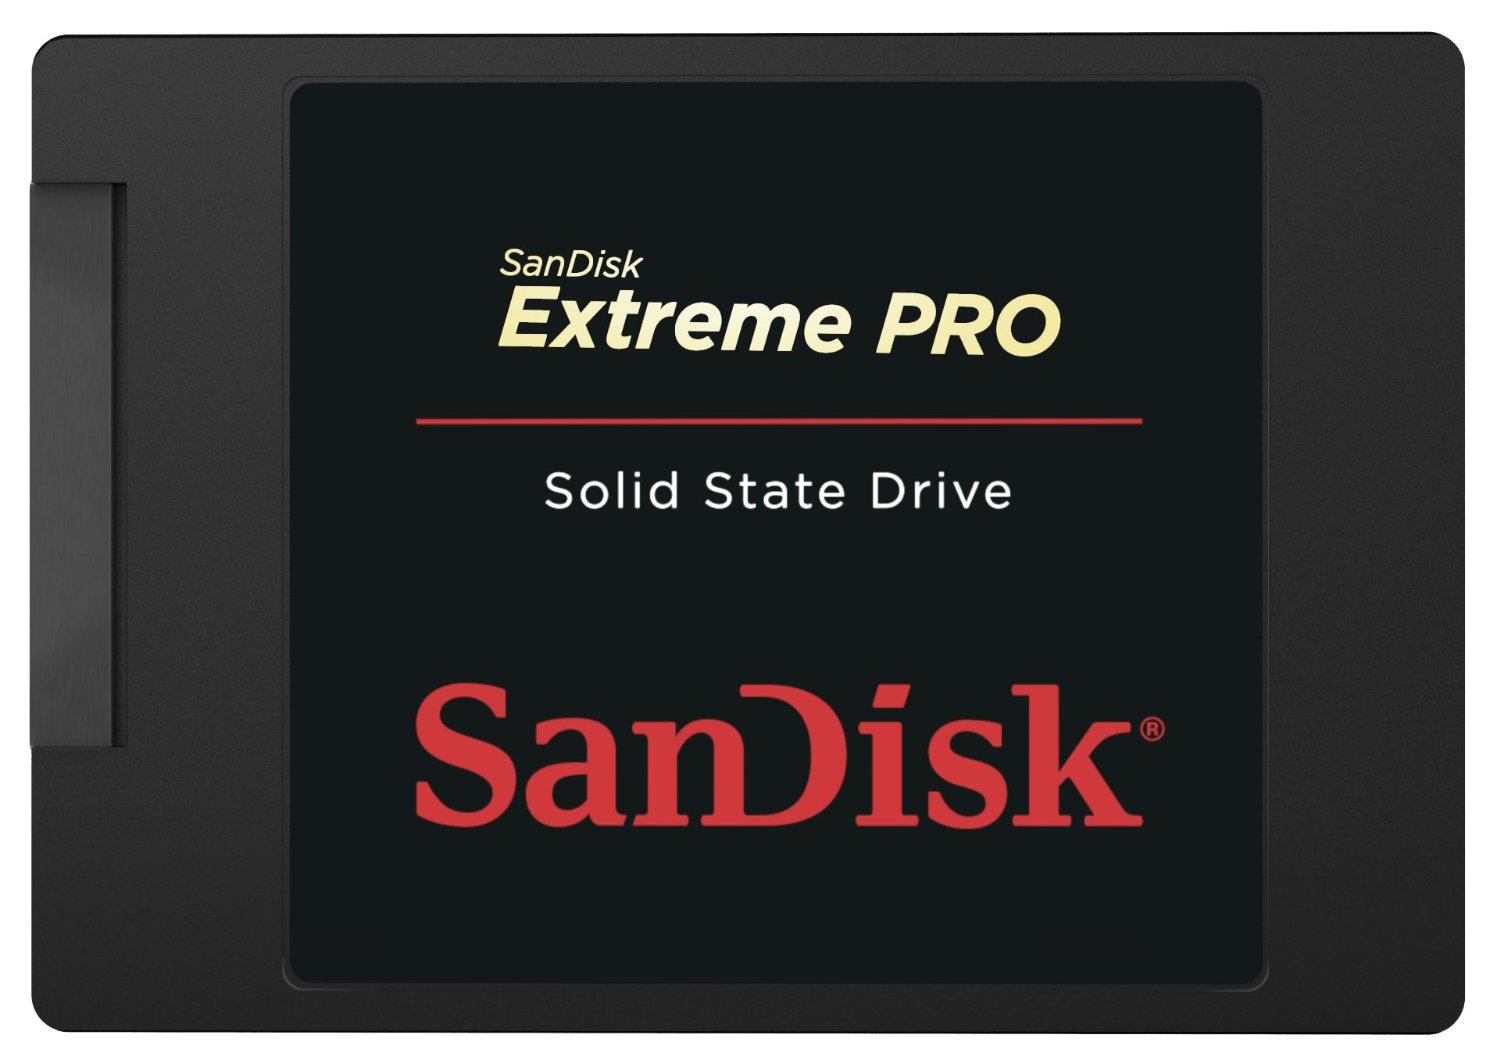 Bild zu Bis 15 Uhr: 480 GB SSD SanDisk Extreme Pro SSD für 169,90€ inkl. Versand